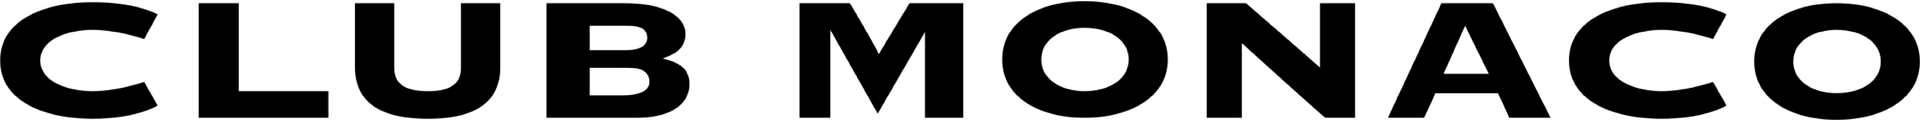 CLUB MONACO logo de circulaires